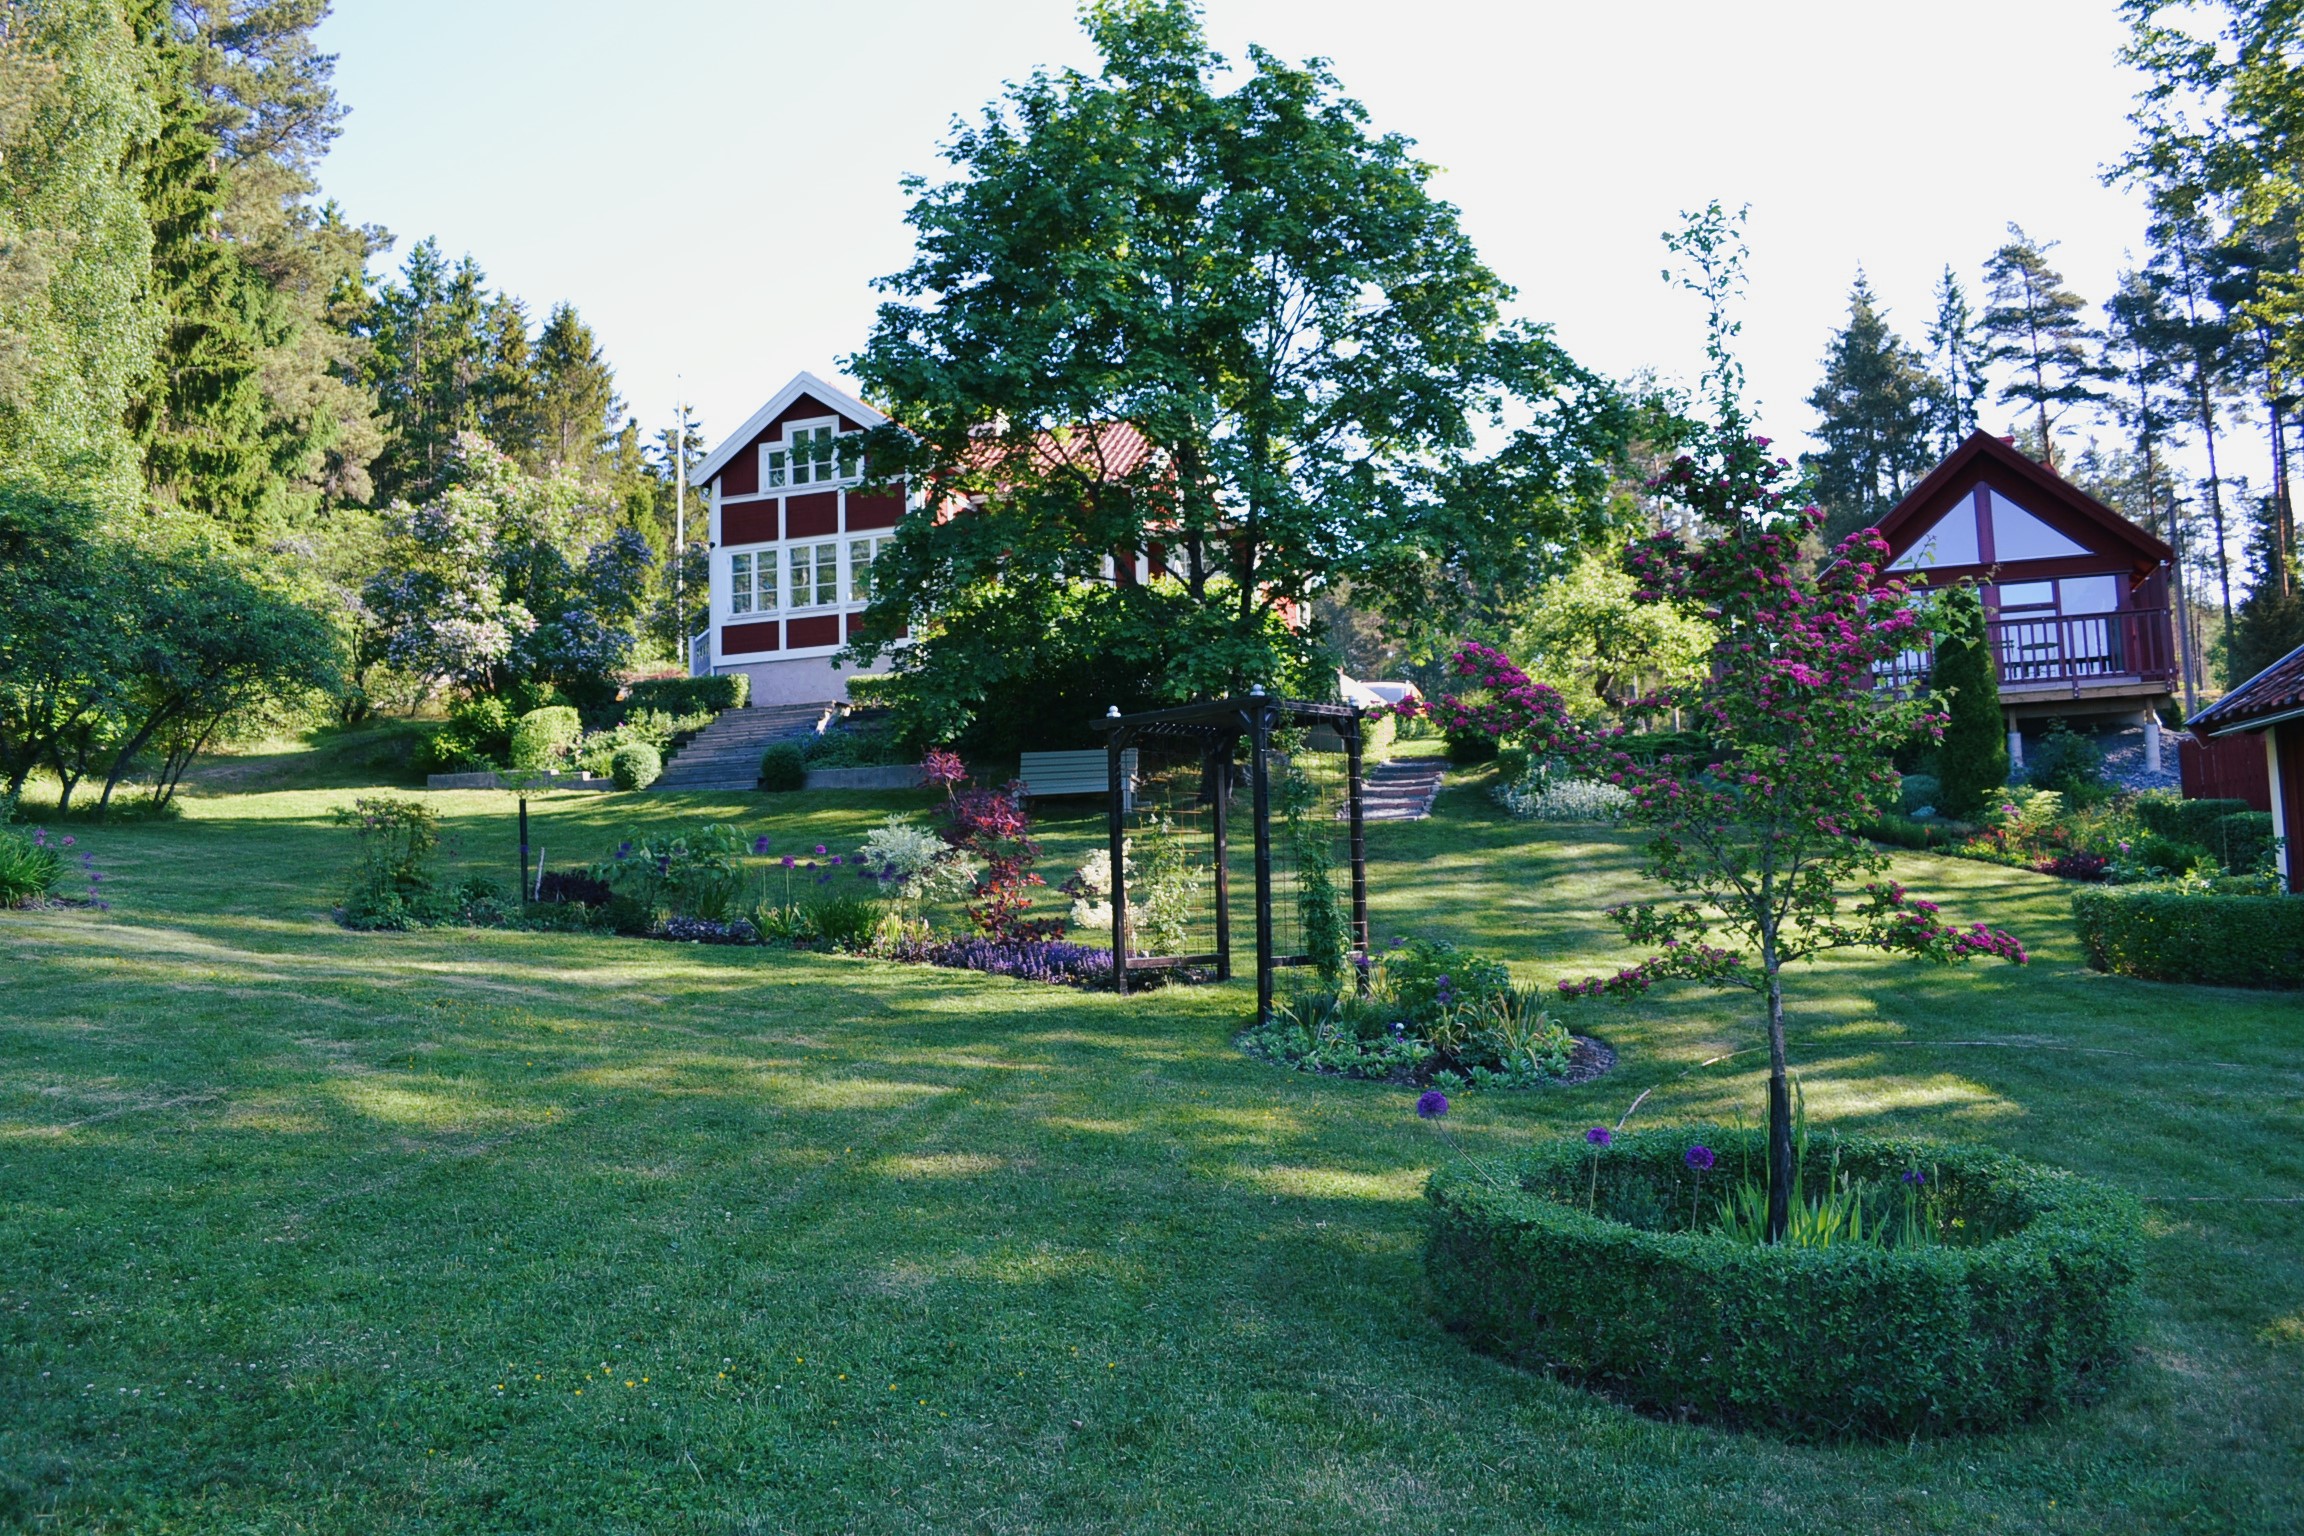 visningsträdgård | Sandborgs trädgård